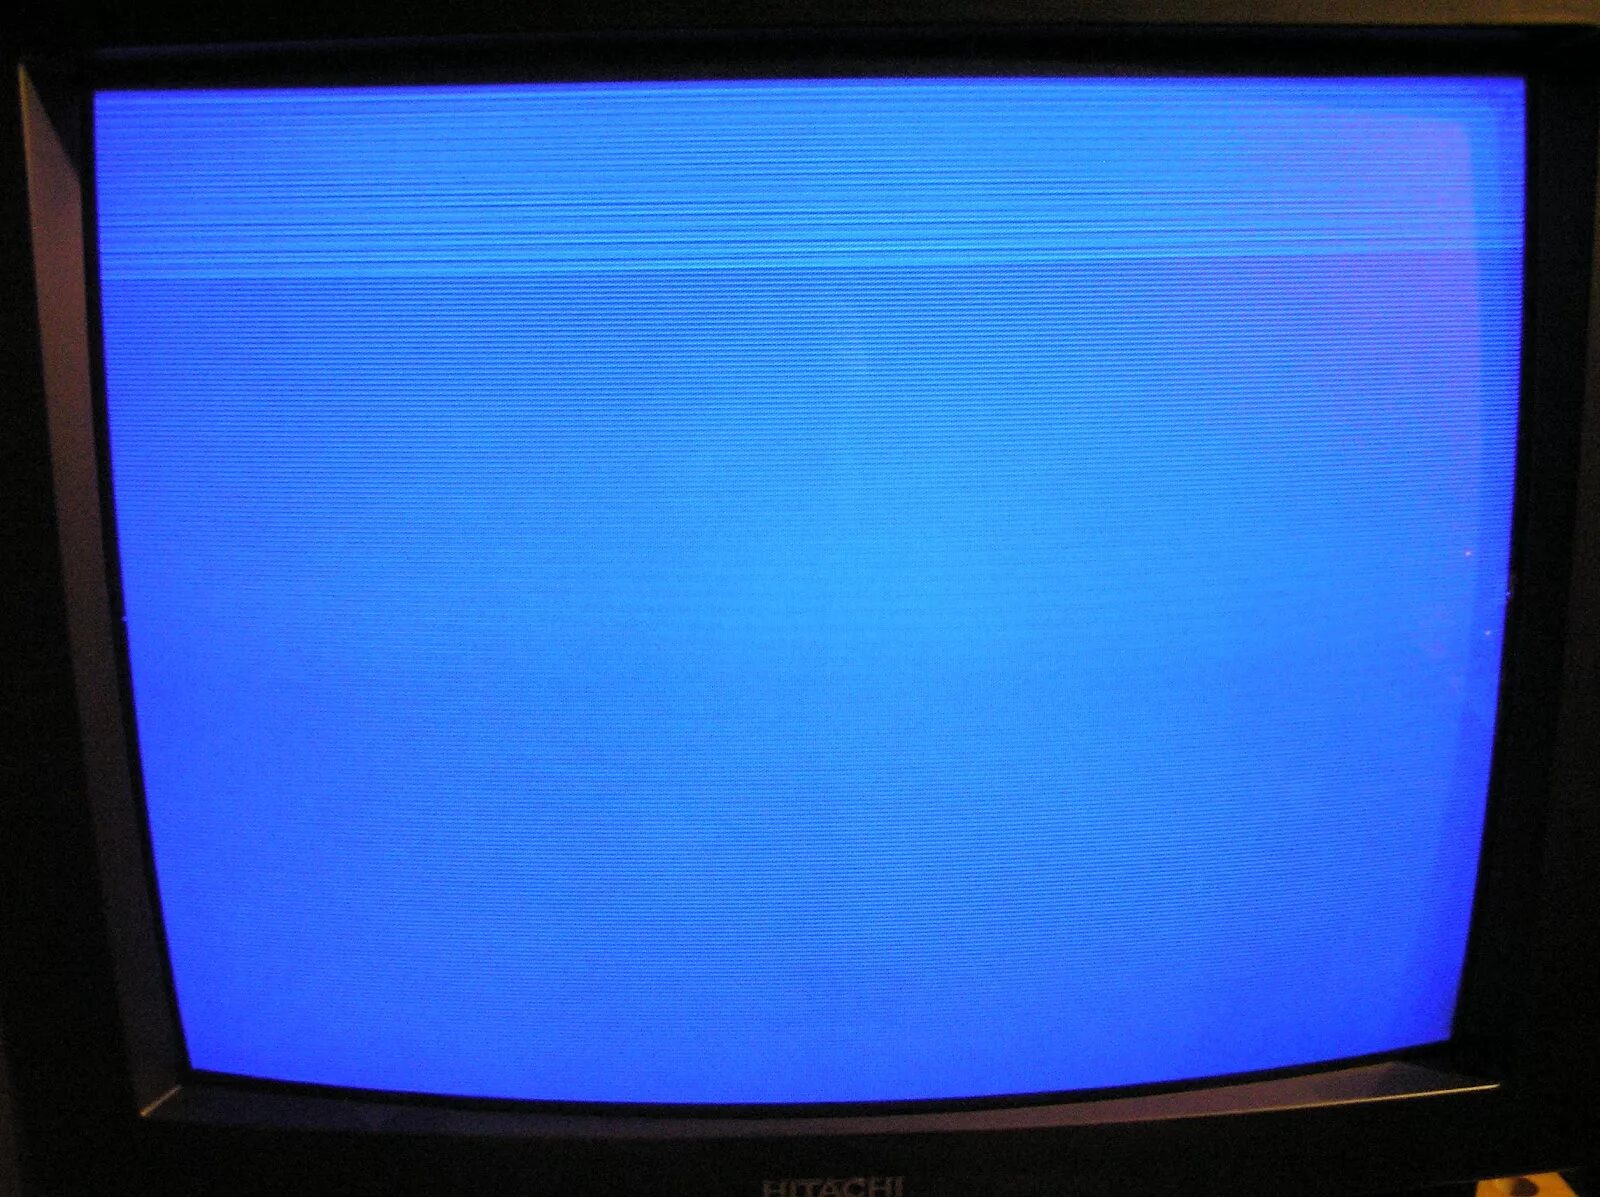 Экрана tv. Синий телевизор. Синяя полоса на экране телевизора. Голубой телевизор. Экран телевизора.